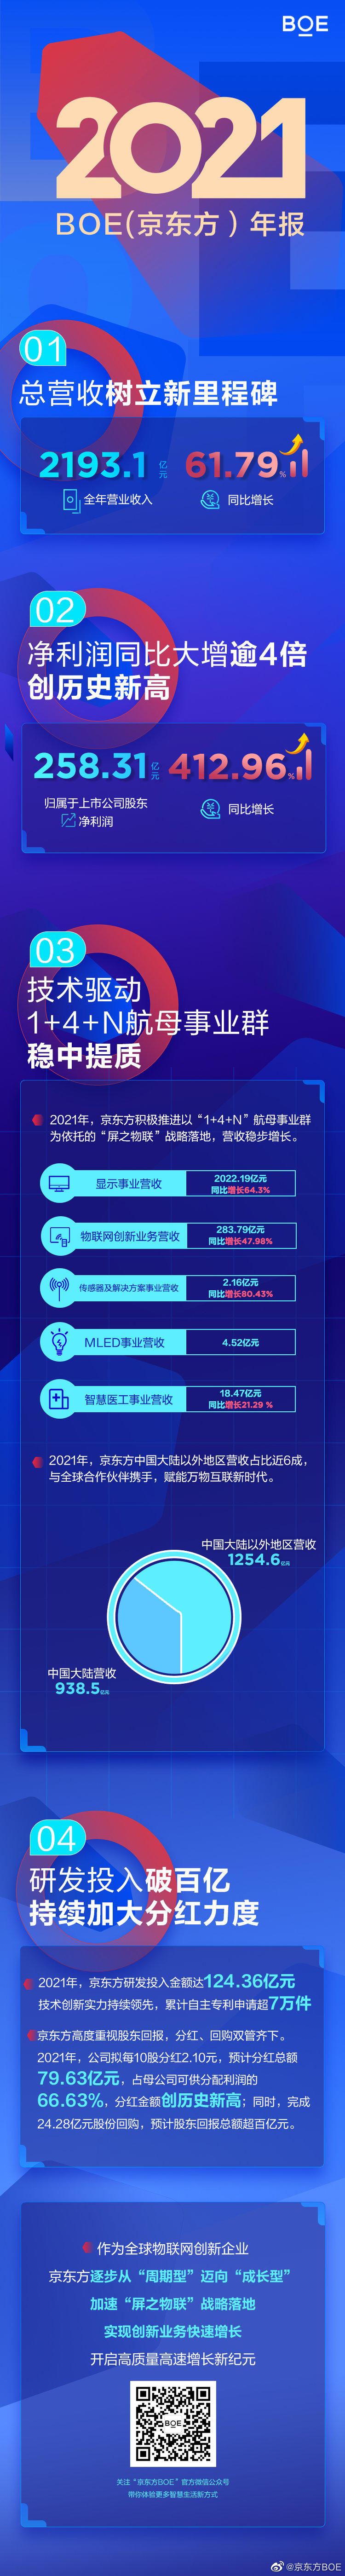 京东方 2021 年营收 2193.10 亿元同比增长 61.79%，净利润同比增长 412.96%